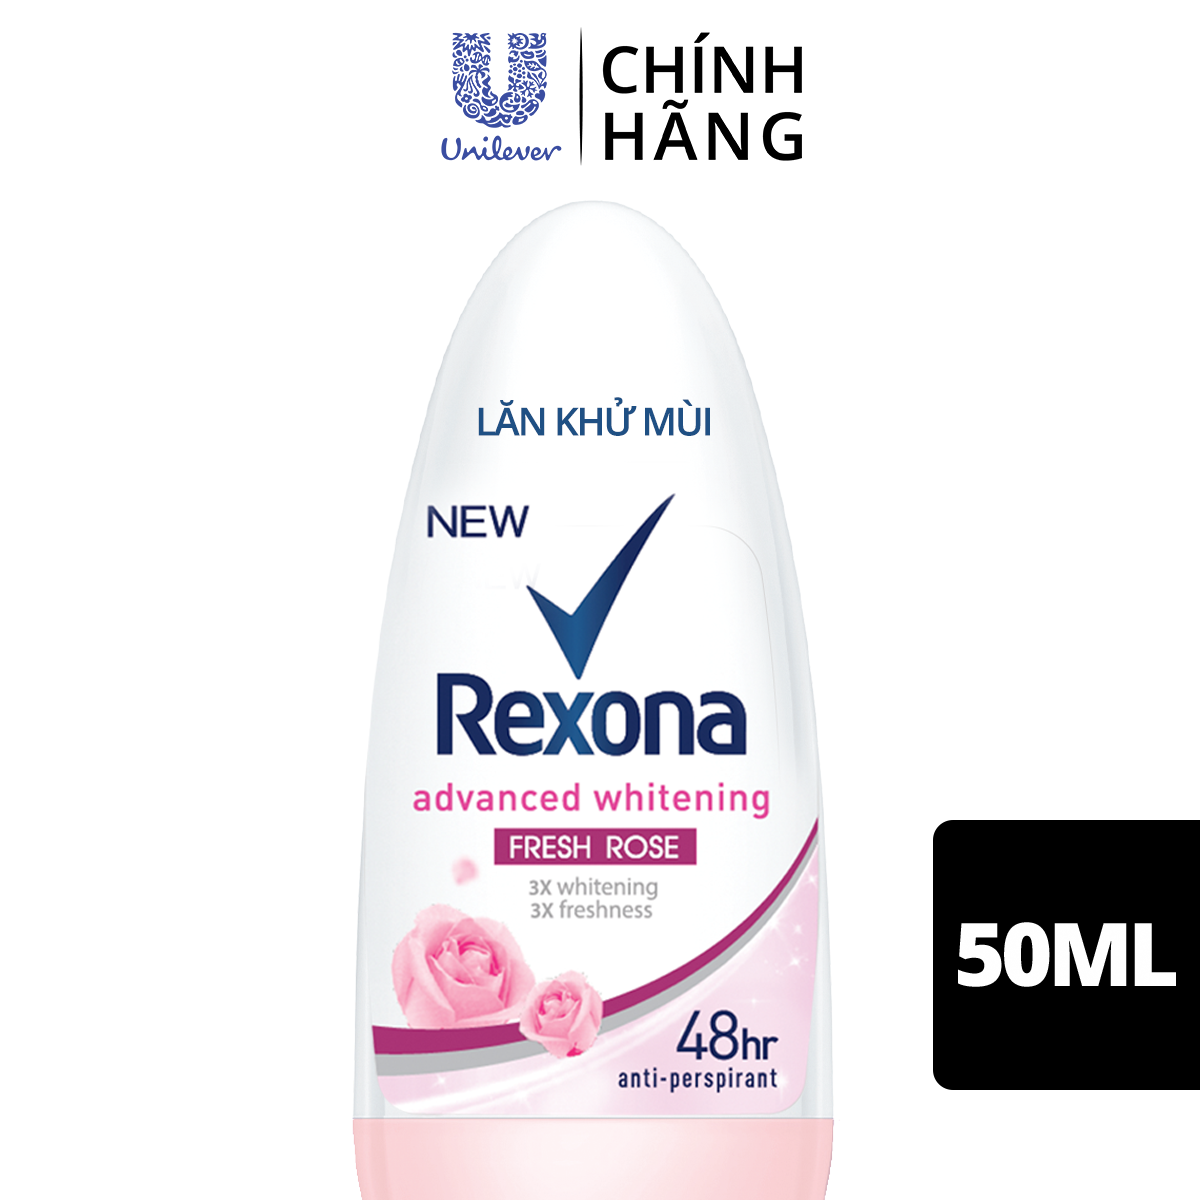 Lăn khử mùi Rexona Whitening Fresh Rose dưỡng sáng tự nhiên hương hoa hồng dành cho nữ, 50ml